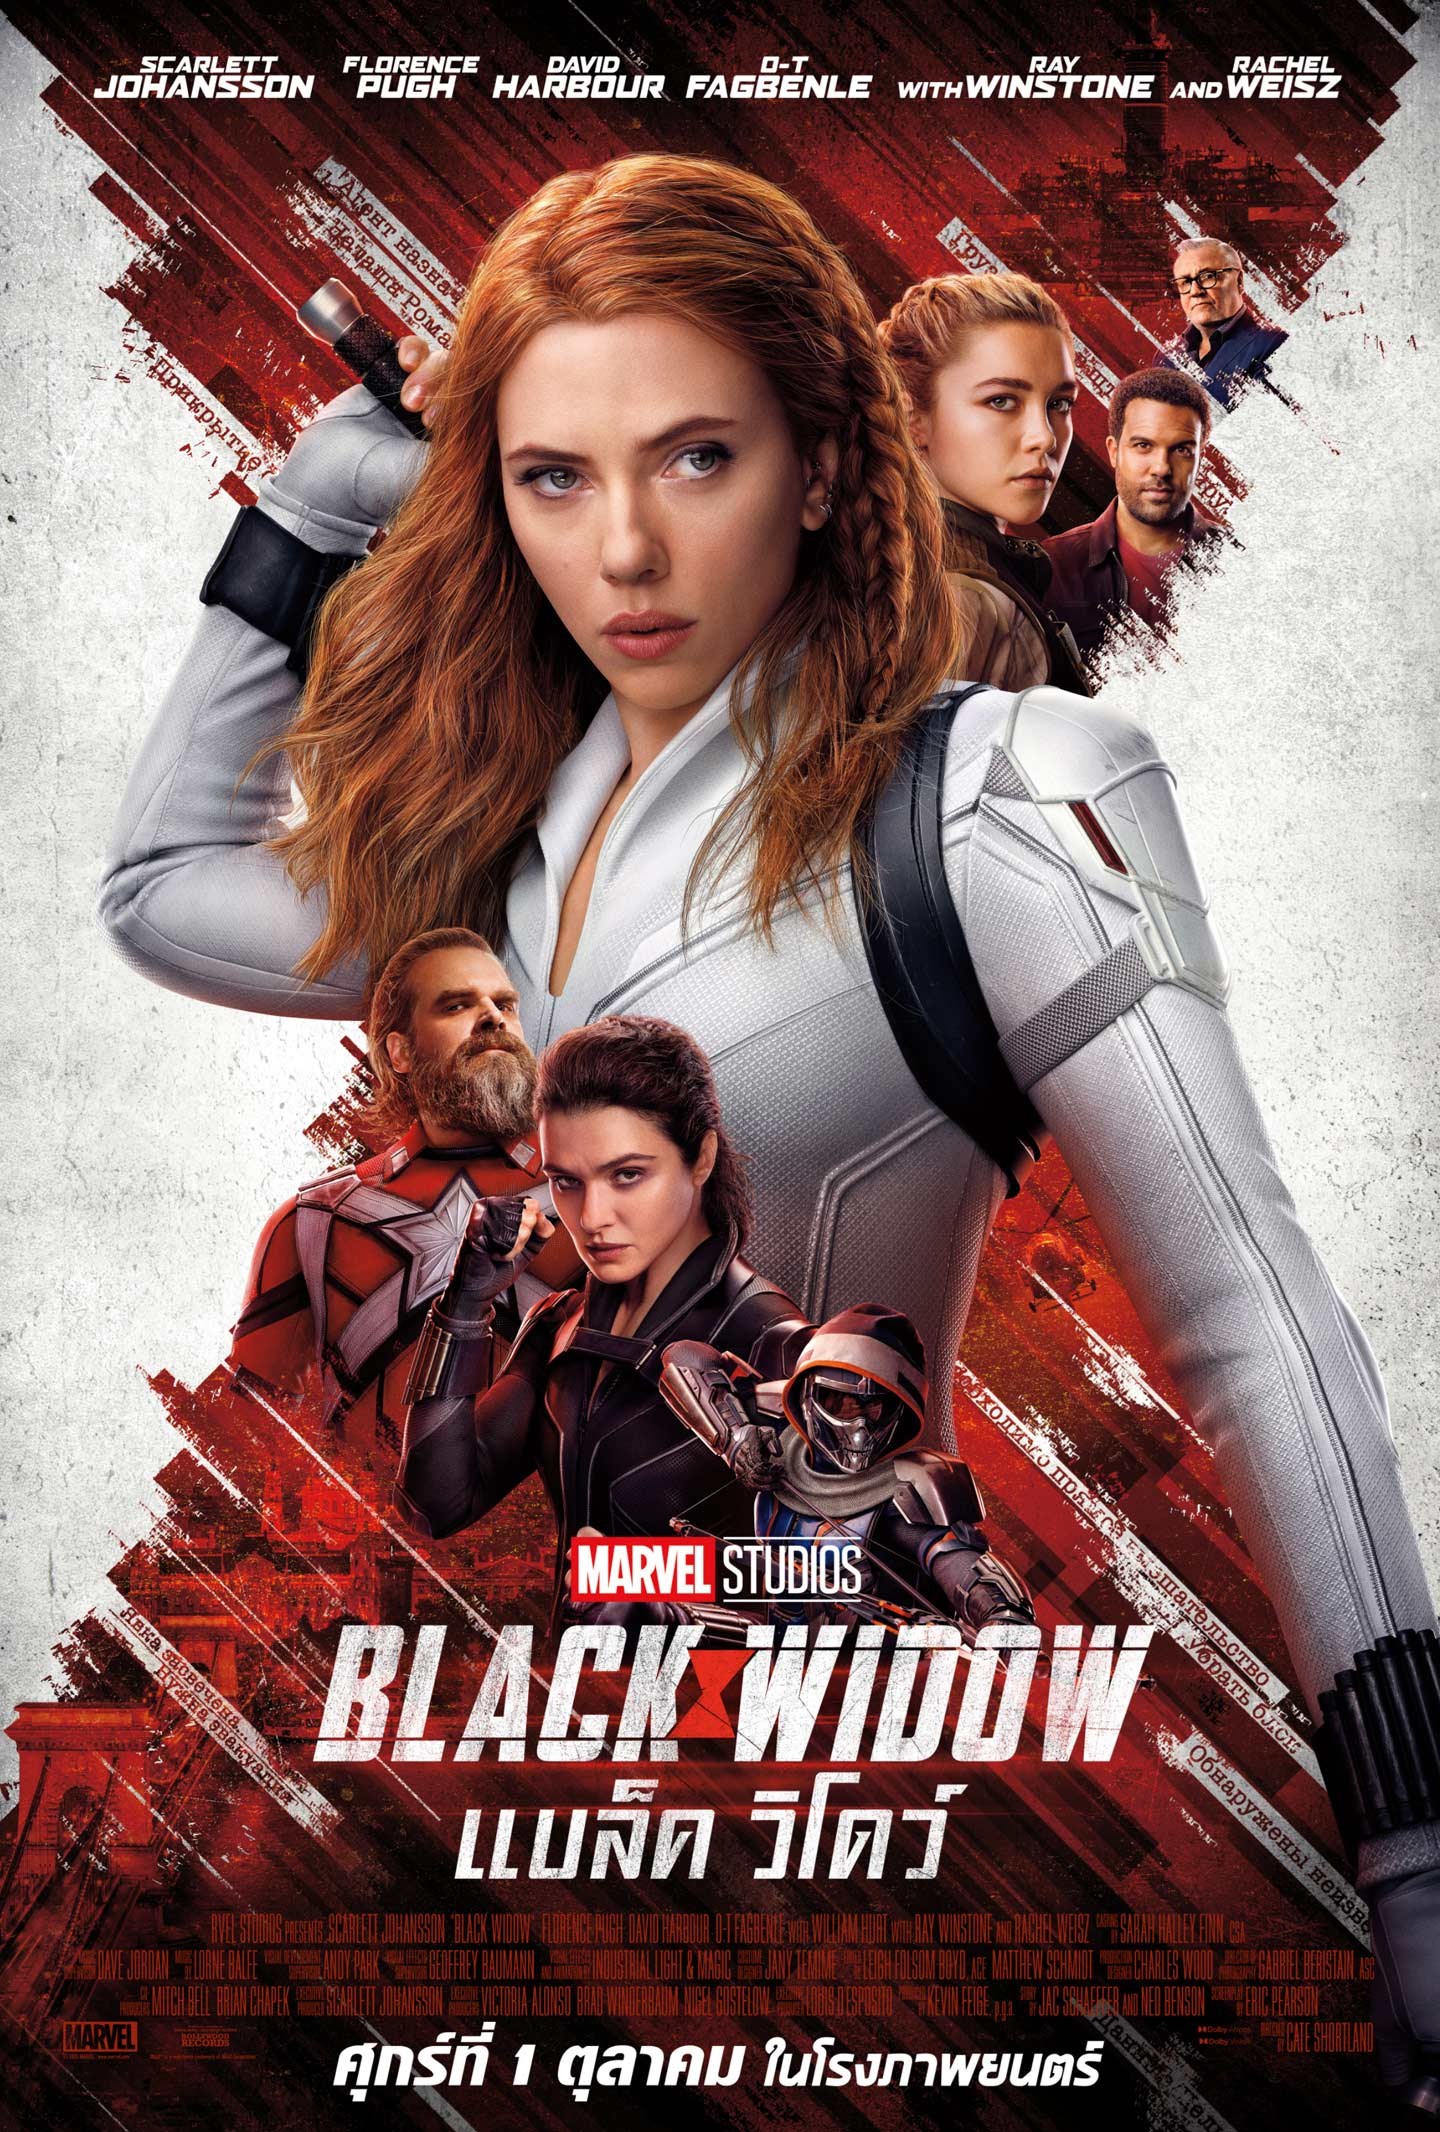 ดูหนังออนไลน์ ดูหนังออนไลน์ไม่มีสะดุด Black Widow 2021 แบล็ค วิโดว์ moviehdfree